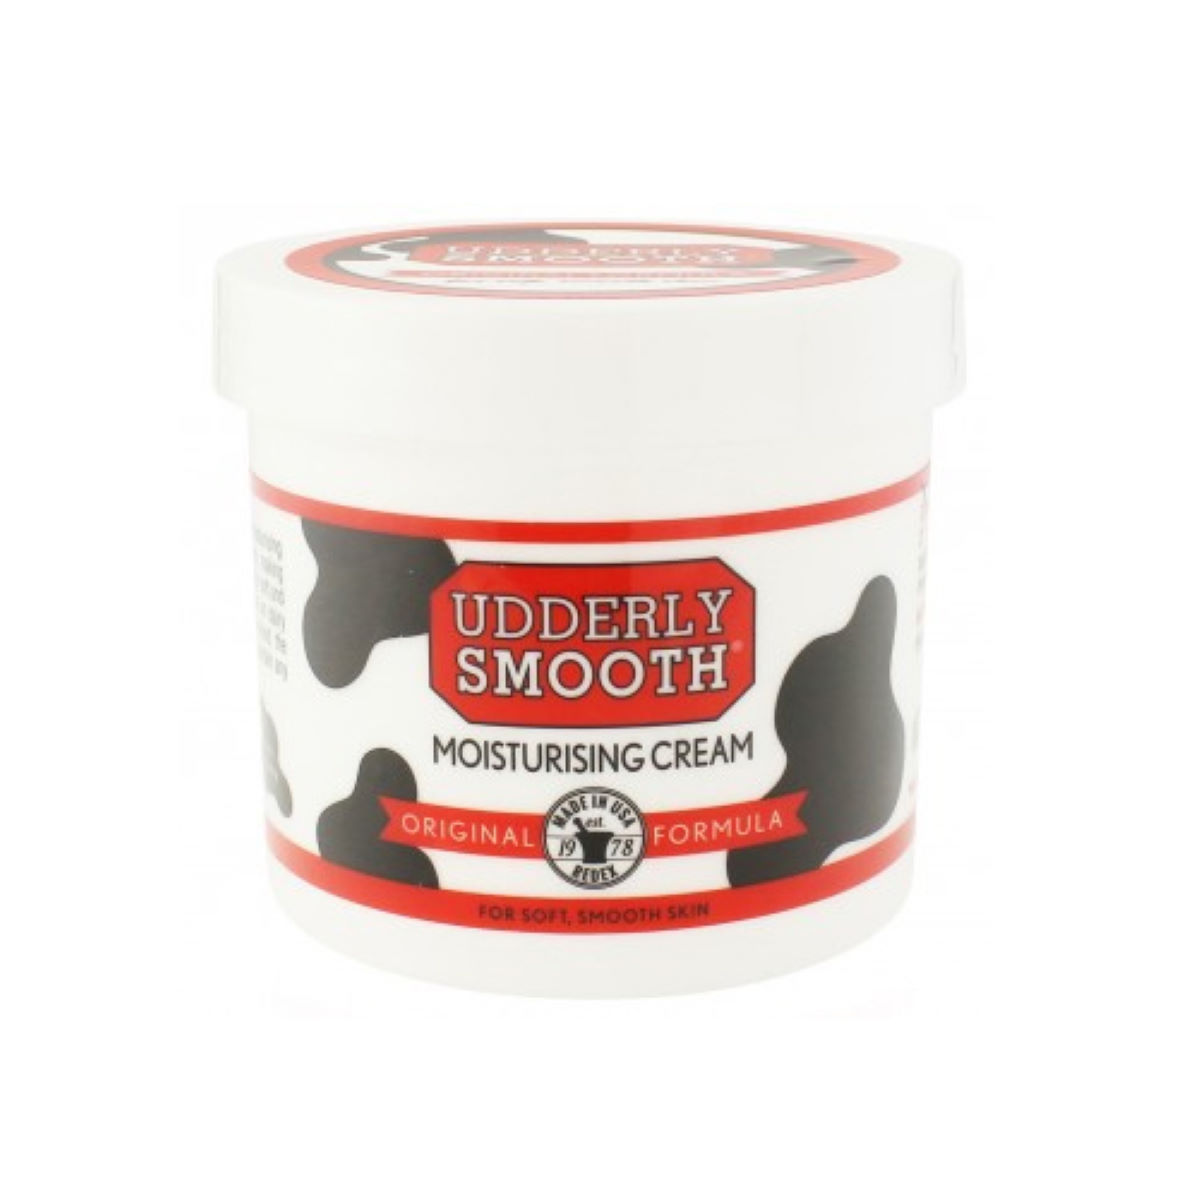 Crema hidratante Udderly Smooth  - Cremas hidratantes y cuidado de la piel